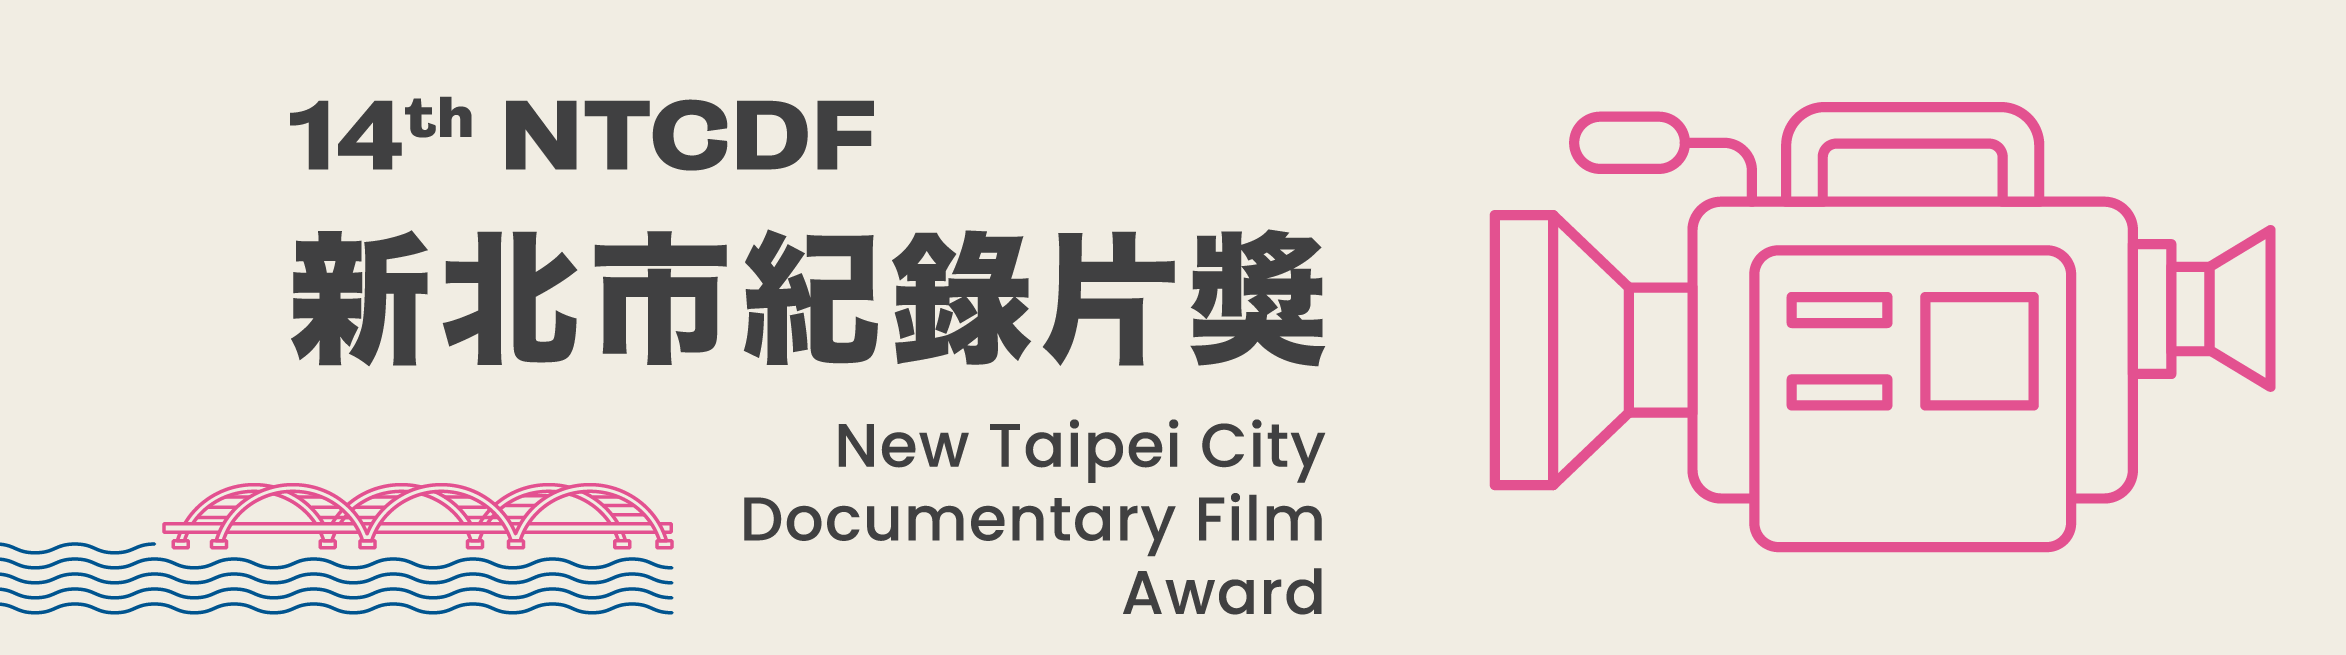 New Taipei City Documentary Film